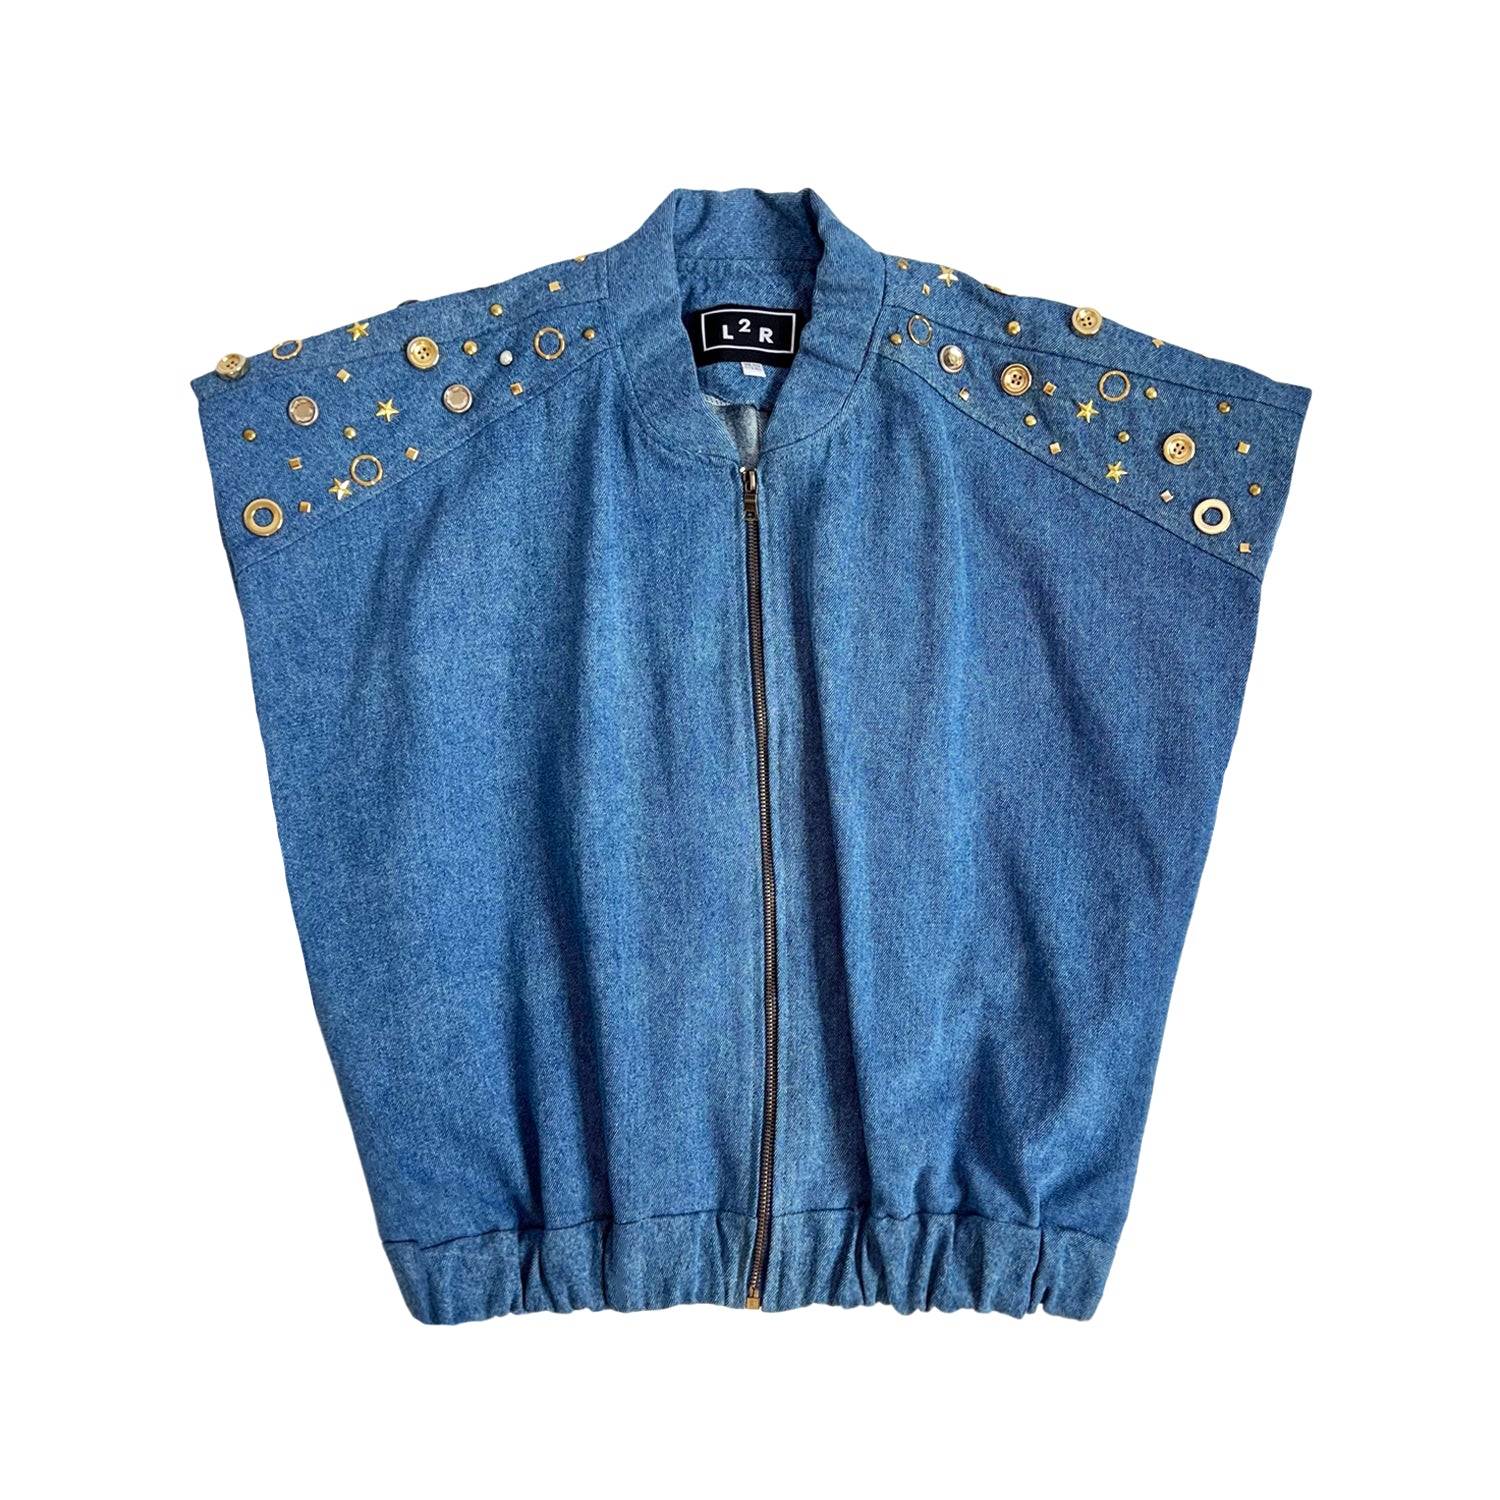 L2r The Label Women's Studded Sleeveless Bomber Jacket In Blue Denim